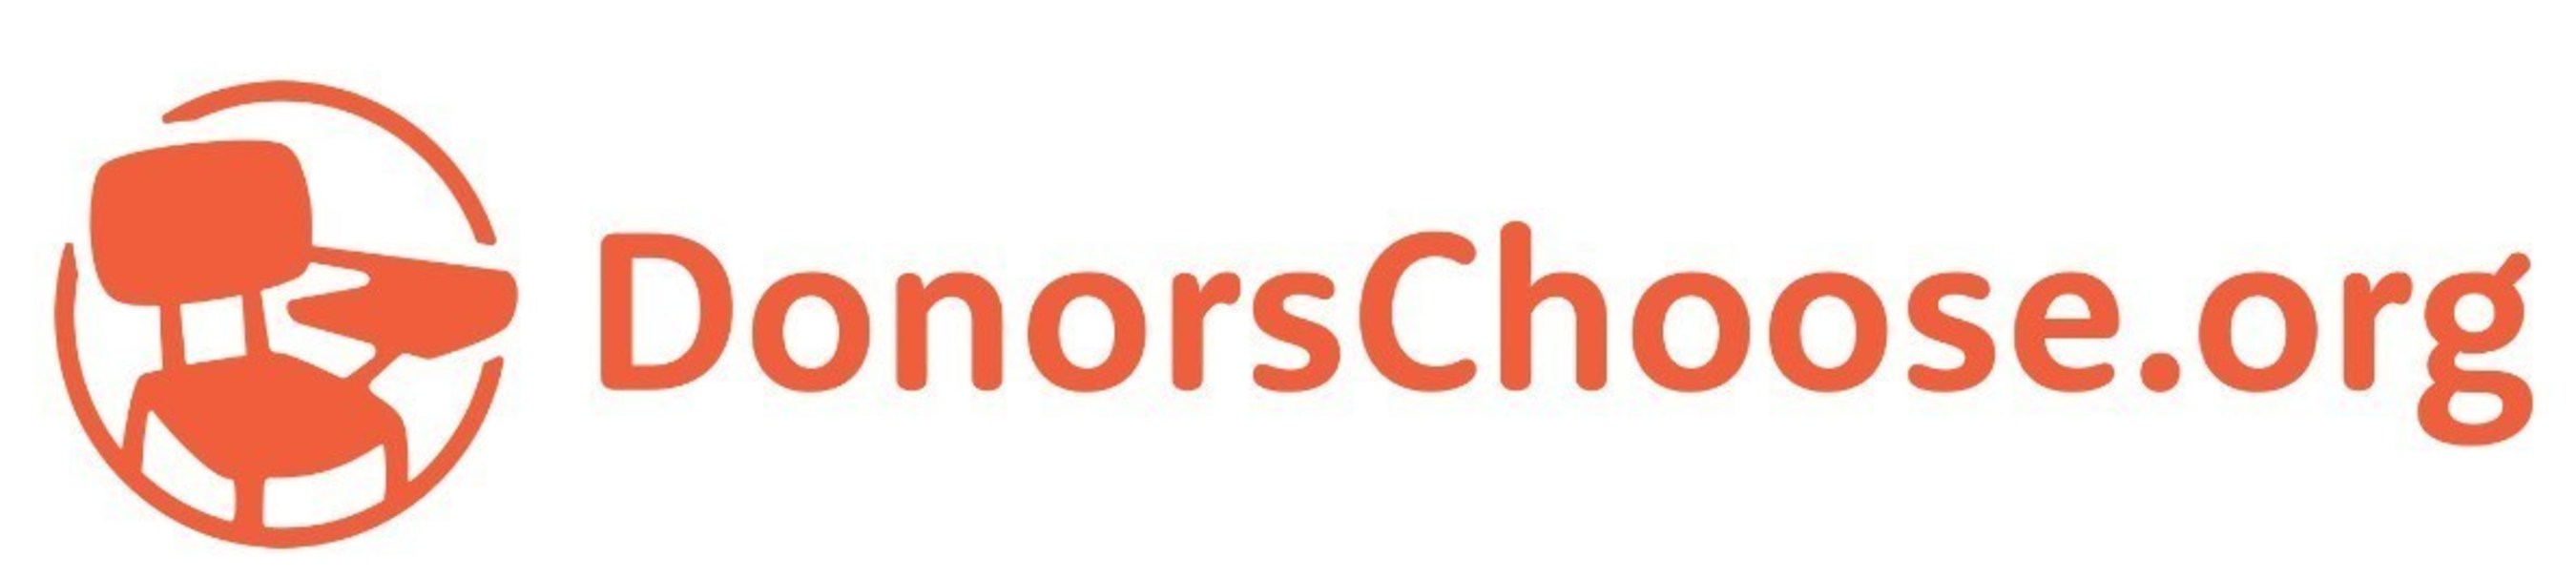 DonorsChoose.org logo